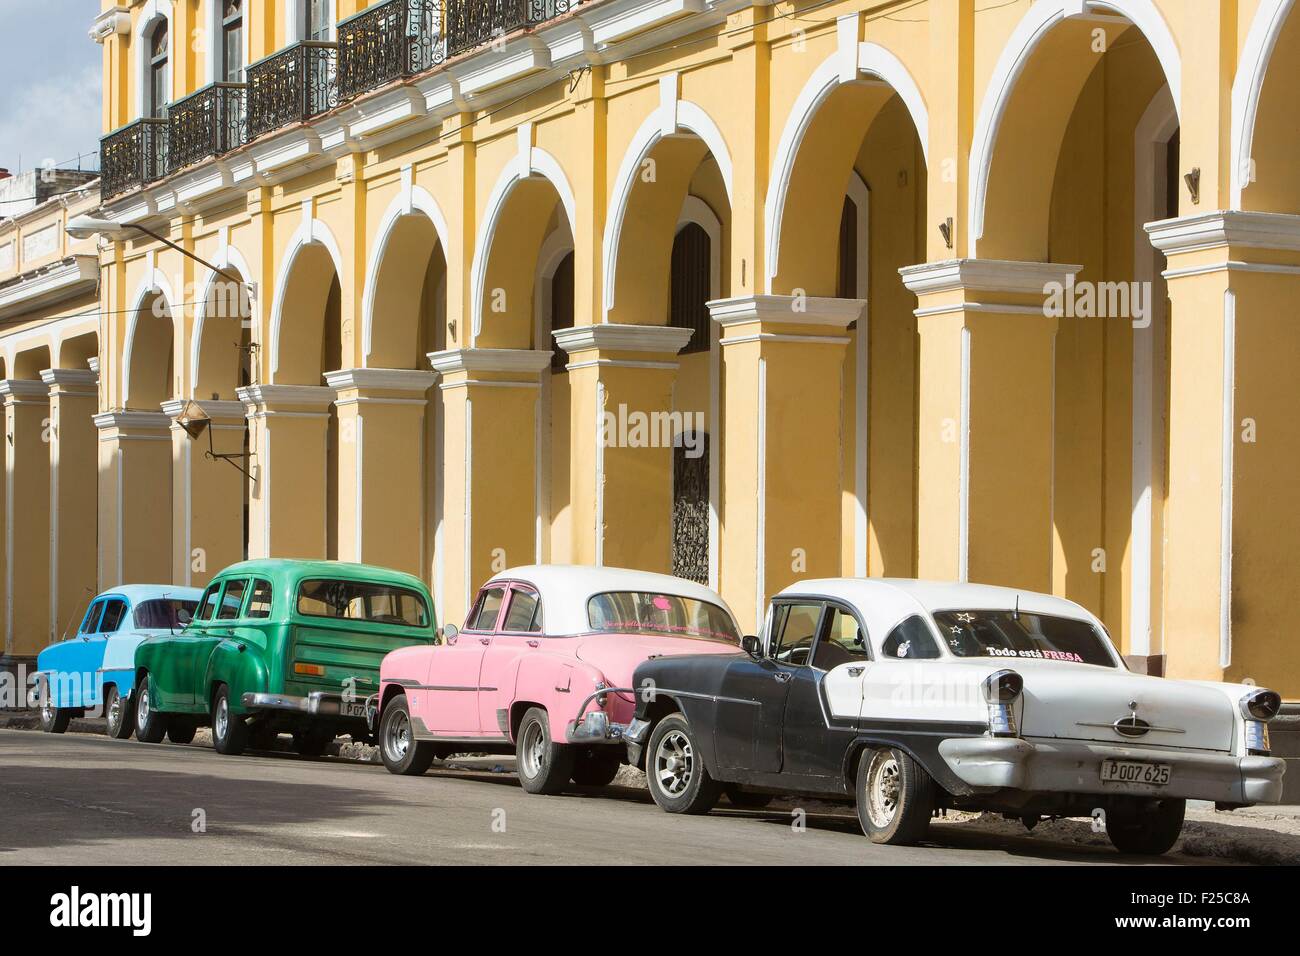 Cuba, Ciudad de la Habana Province, La Havane, La Habana Vieja ville inscrite au Patrimoine Mondial de l'UNESCO, voiture américaine en face de bâtiments Banque D'Images